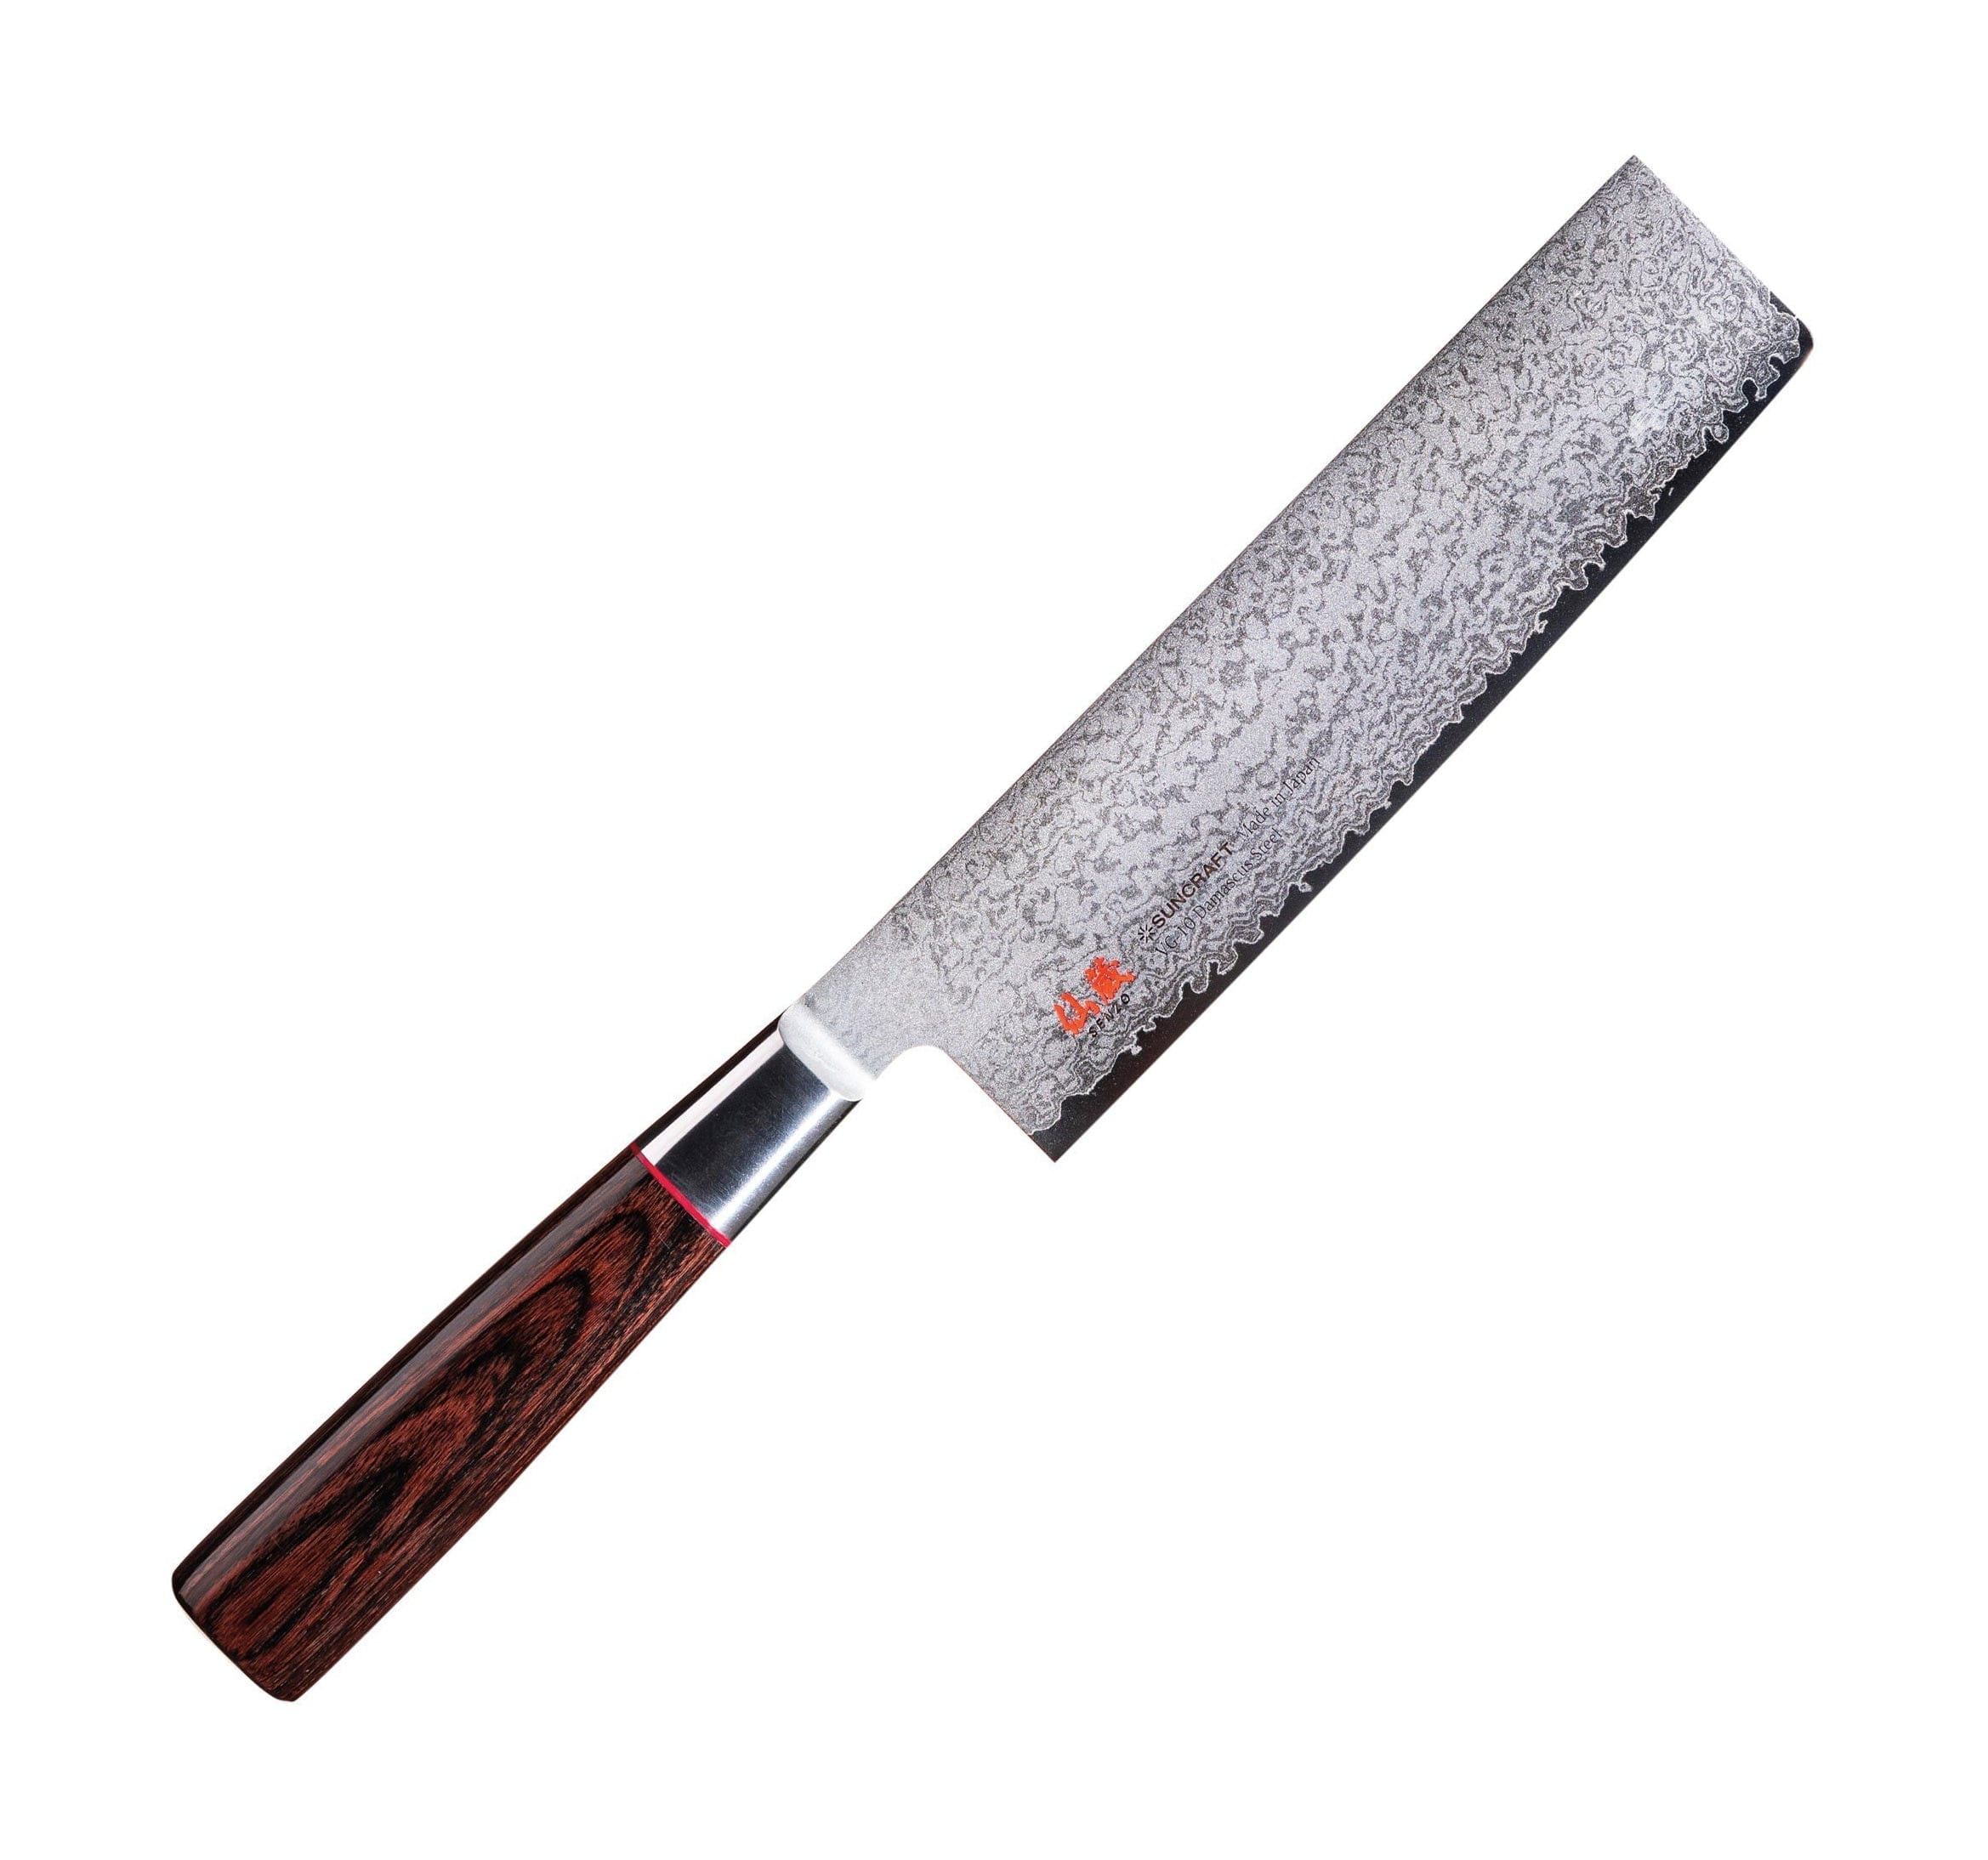 Senzo Classic Id 15 Nakiri Knife, 16.7 Cm